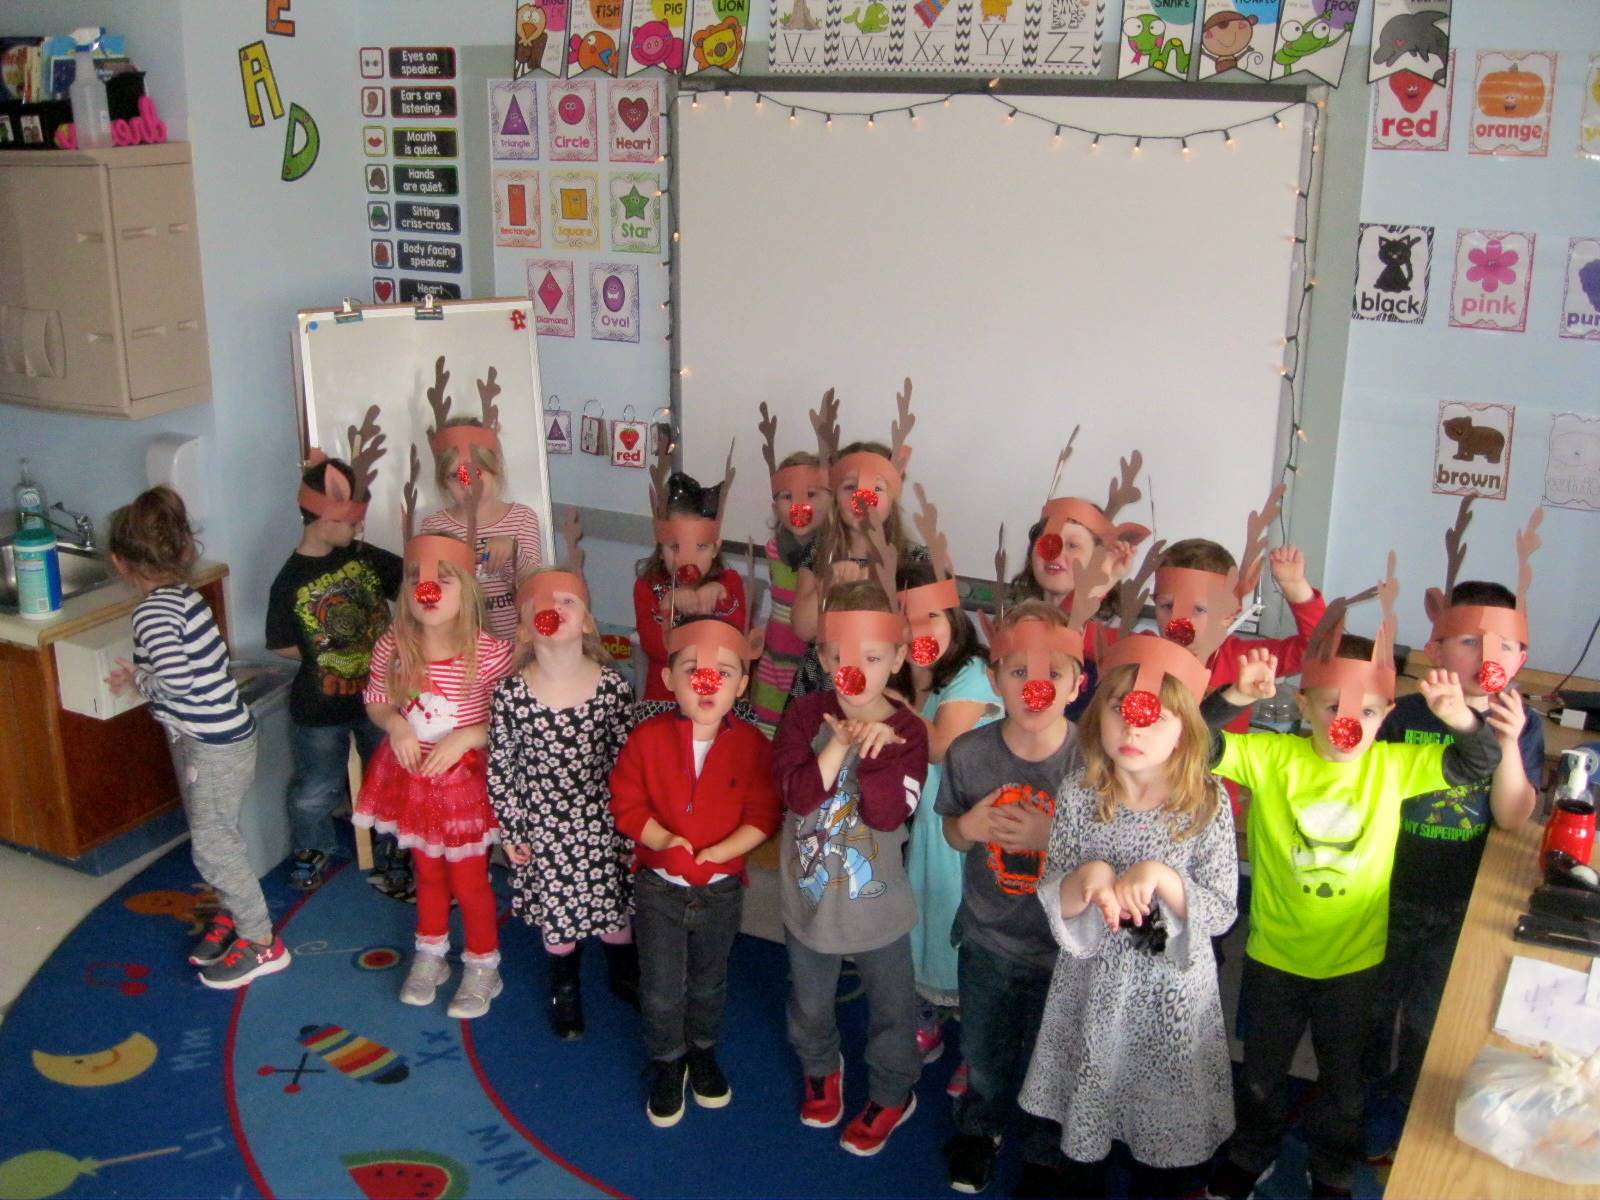 Students dressed as reindeer.